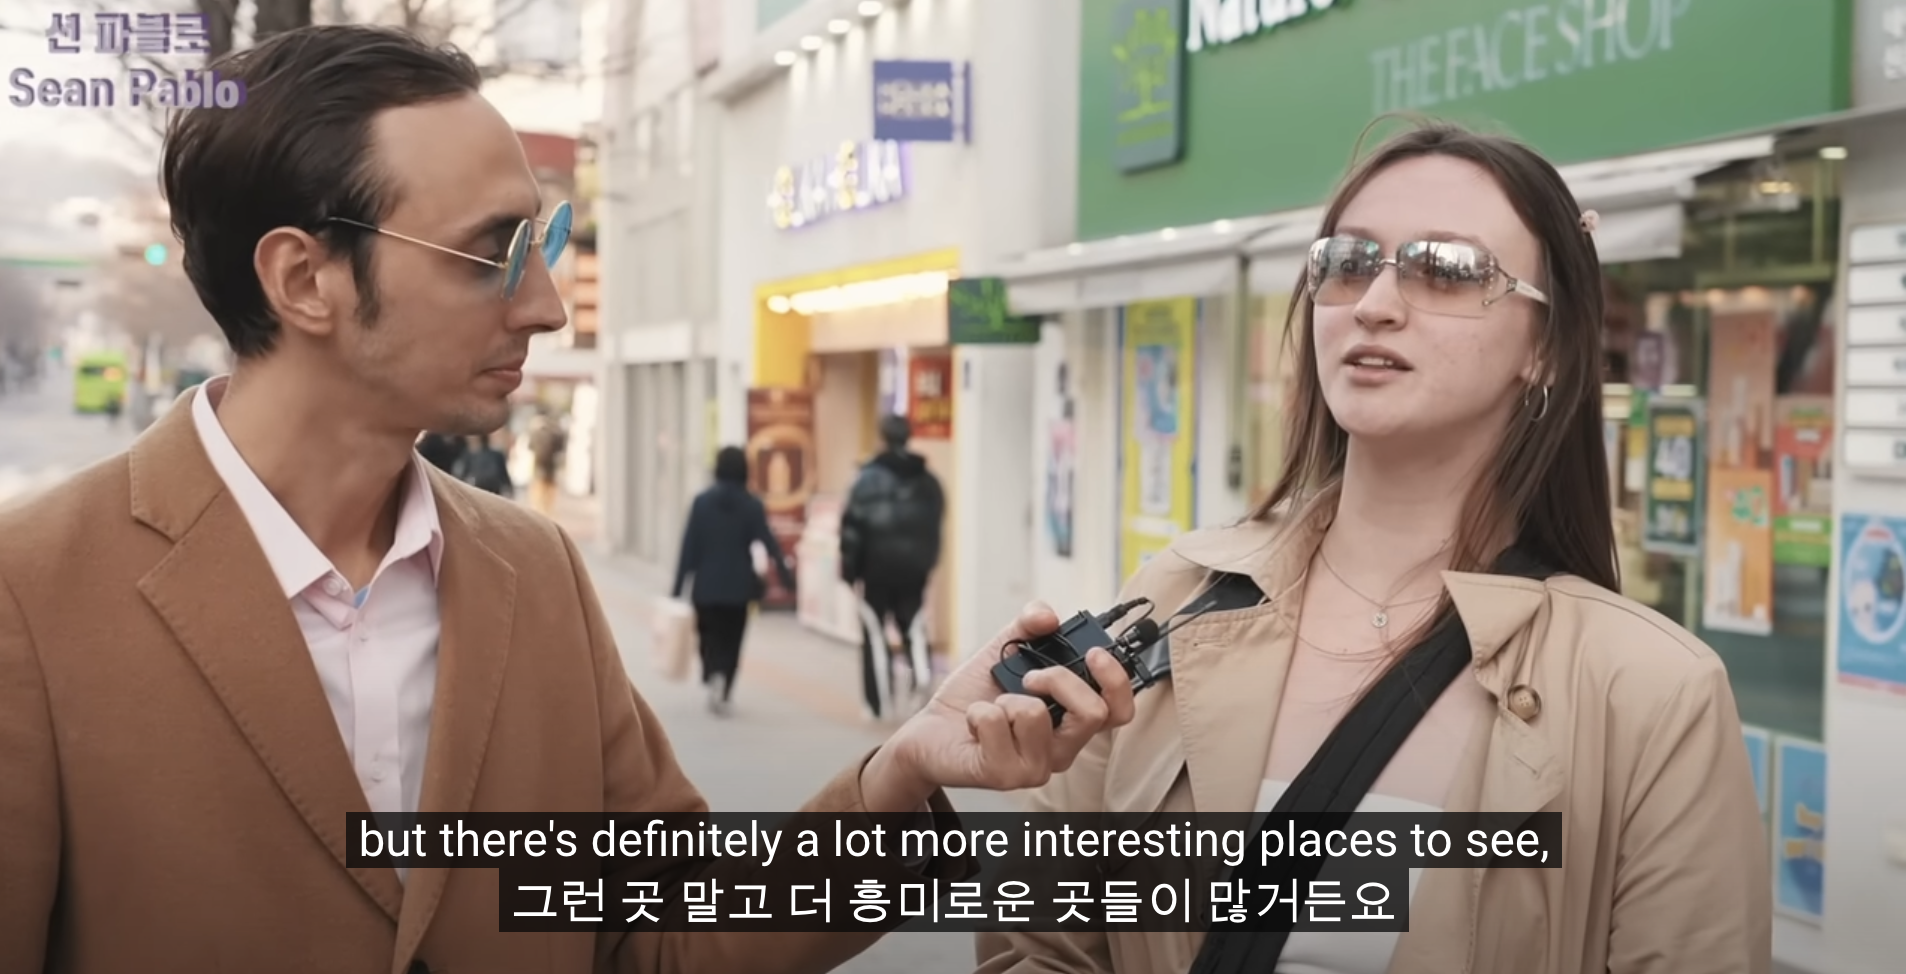 한국의 관광 마케팅, 현 시점에서 가장 이해할 수 없는 3가지